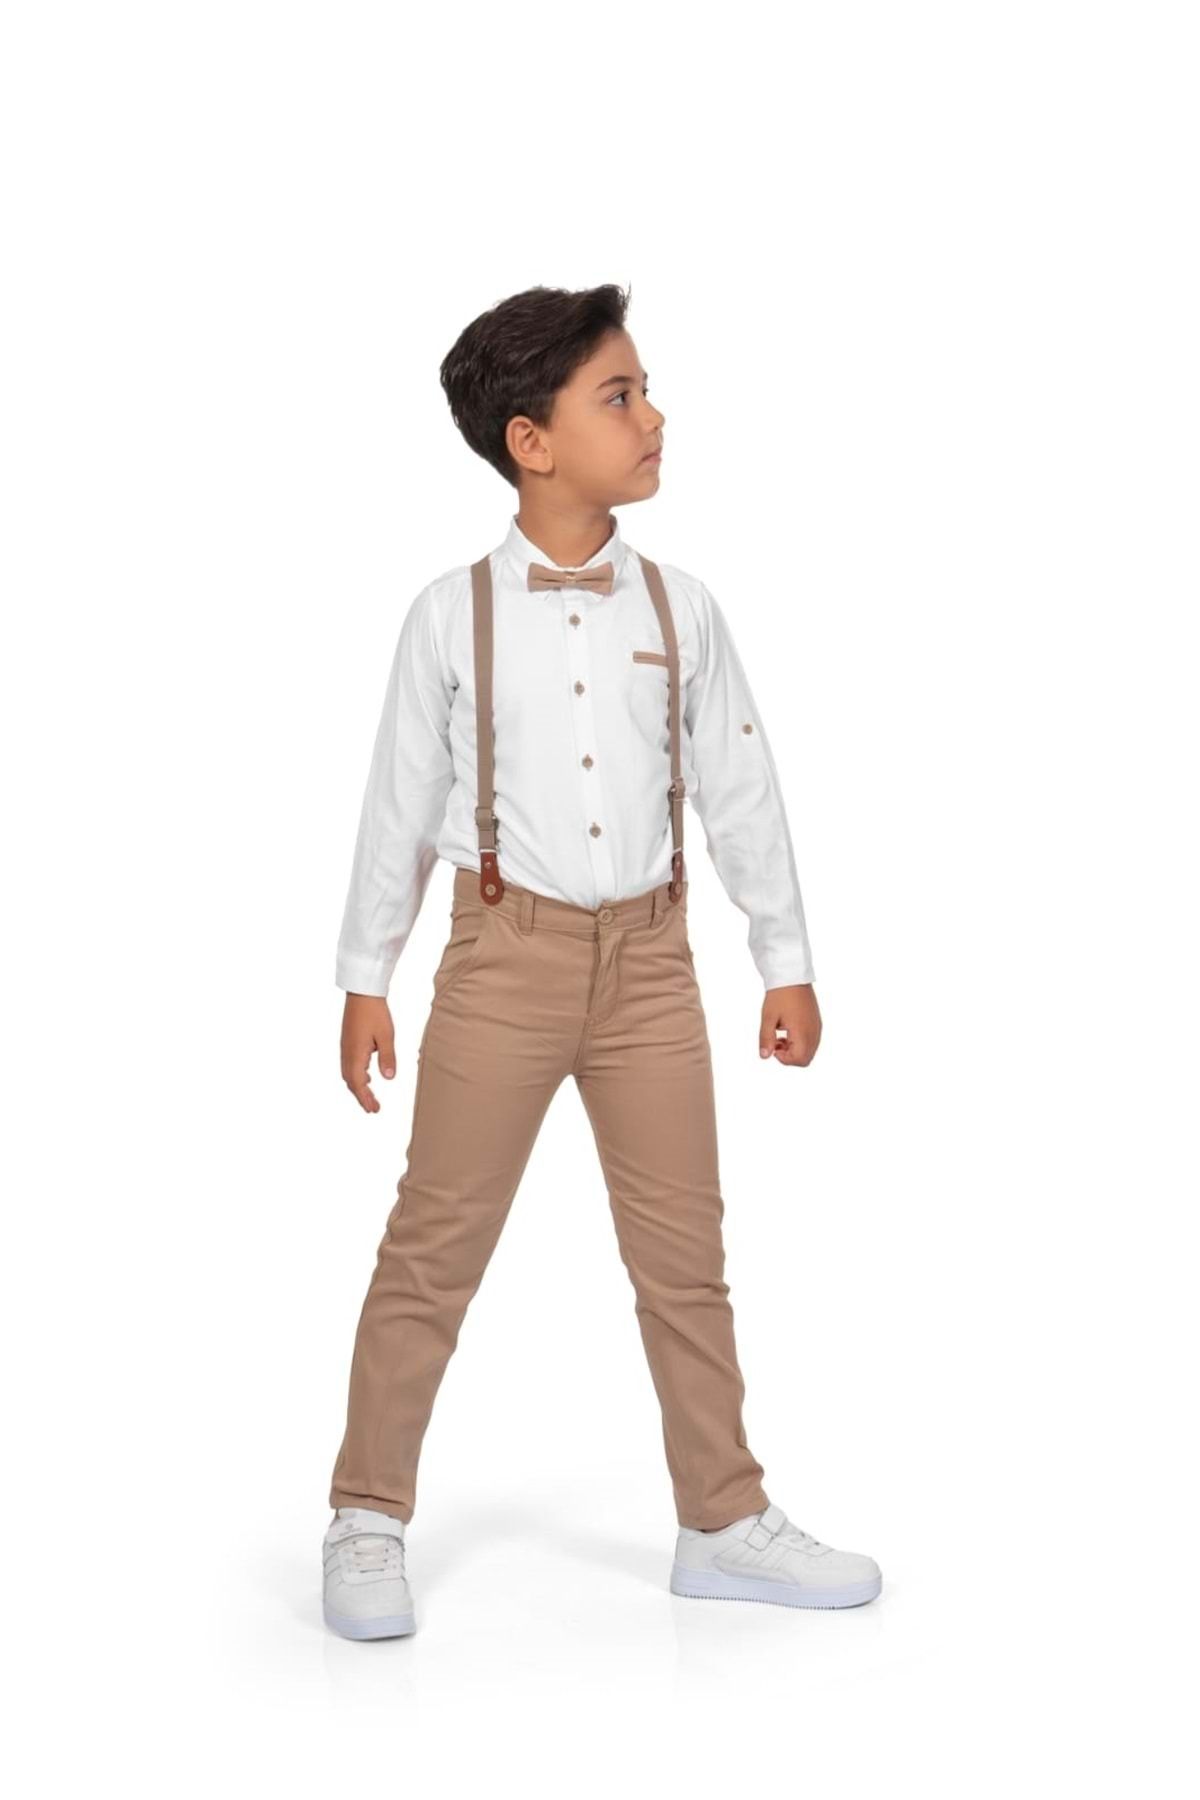 Mnk Baby&Kids Oxford Gömlek Uzun Pantolon Erkek Çocuk Takımı Mnk0302 Kahverengi